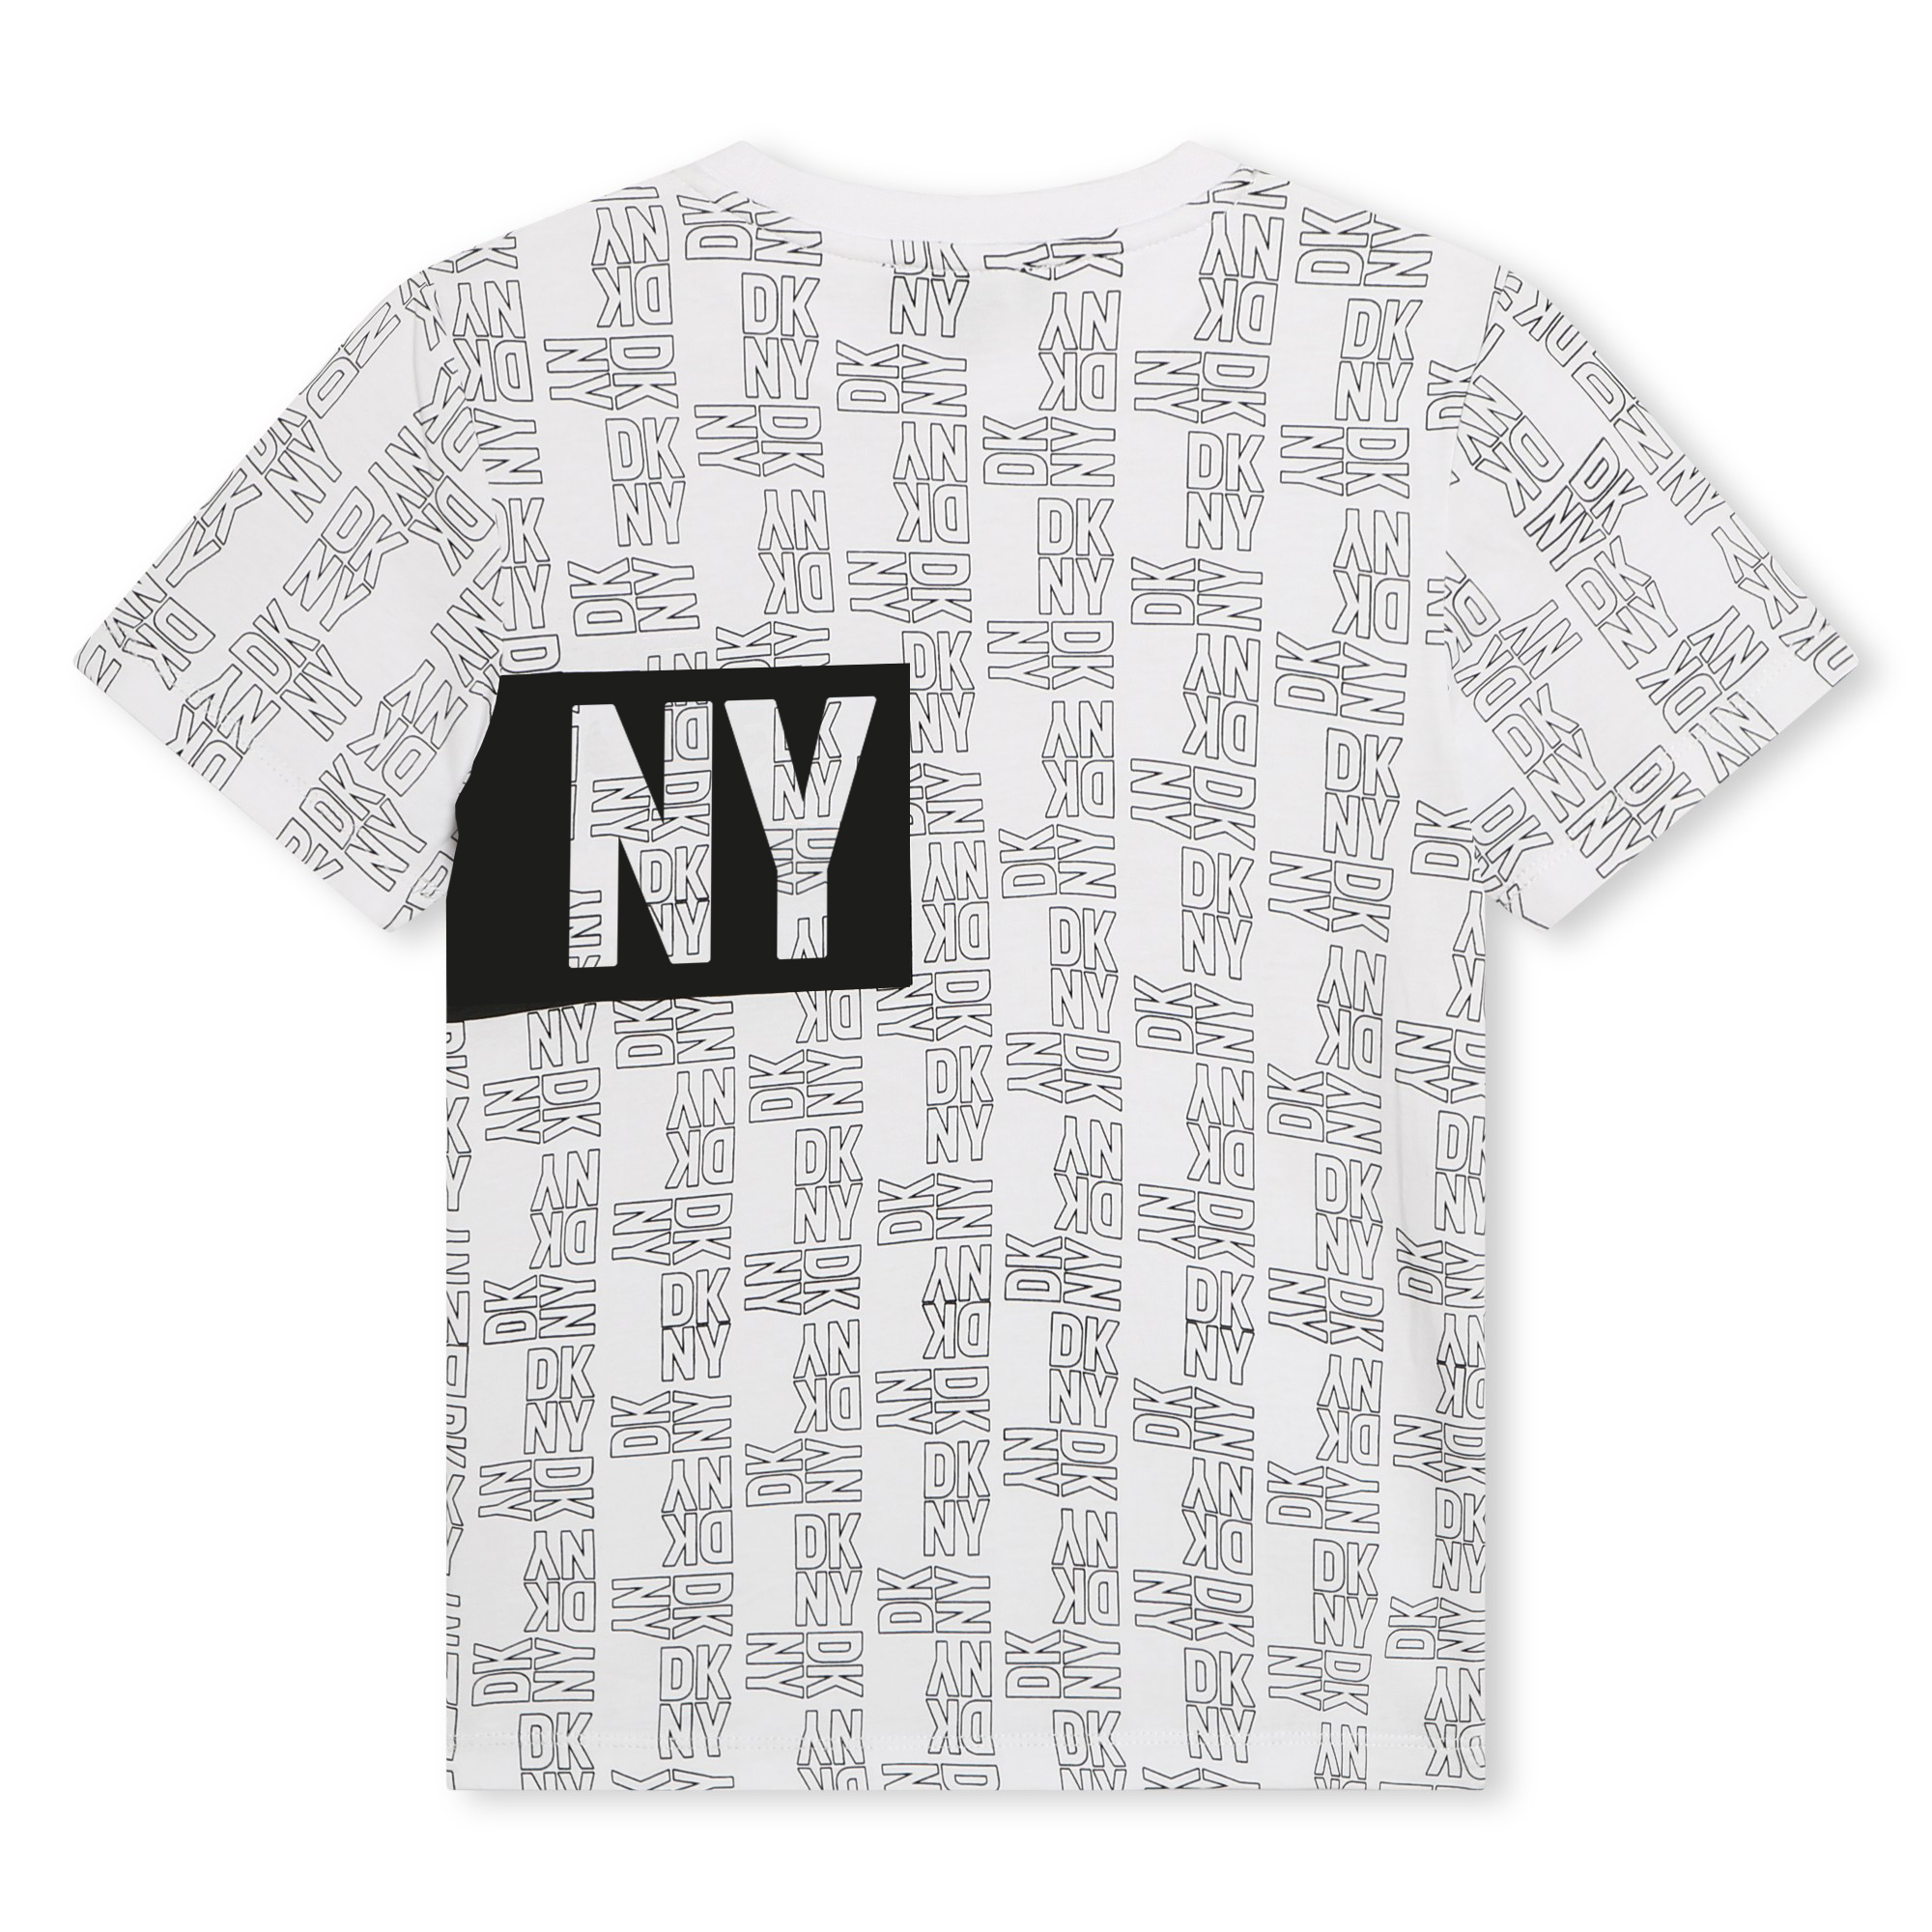 Camiseta unisex de algodón DKNY para UNISEXO